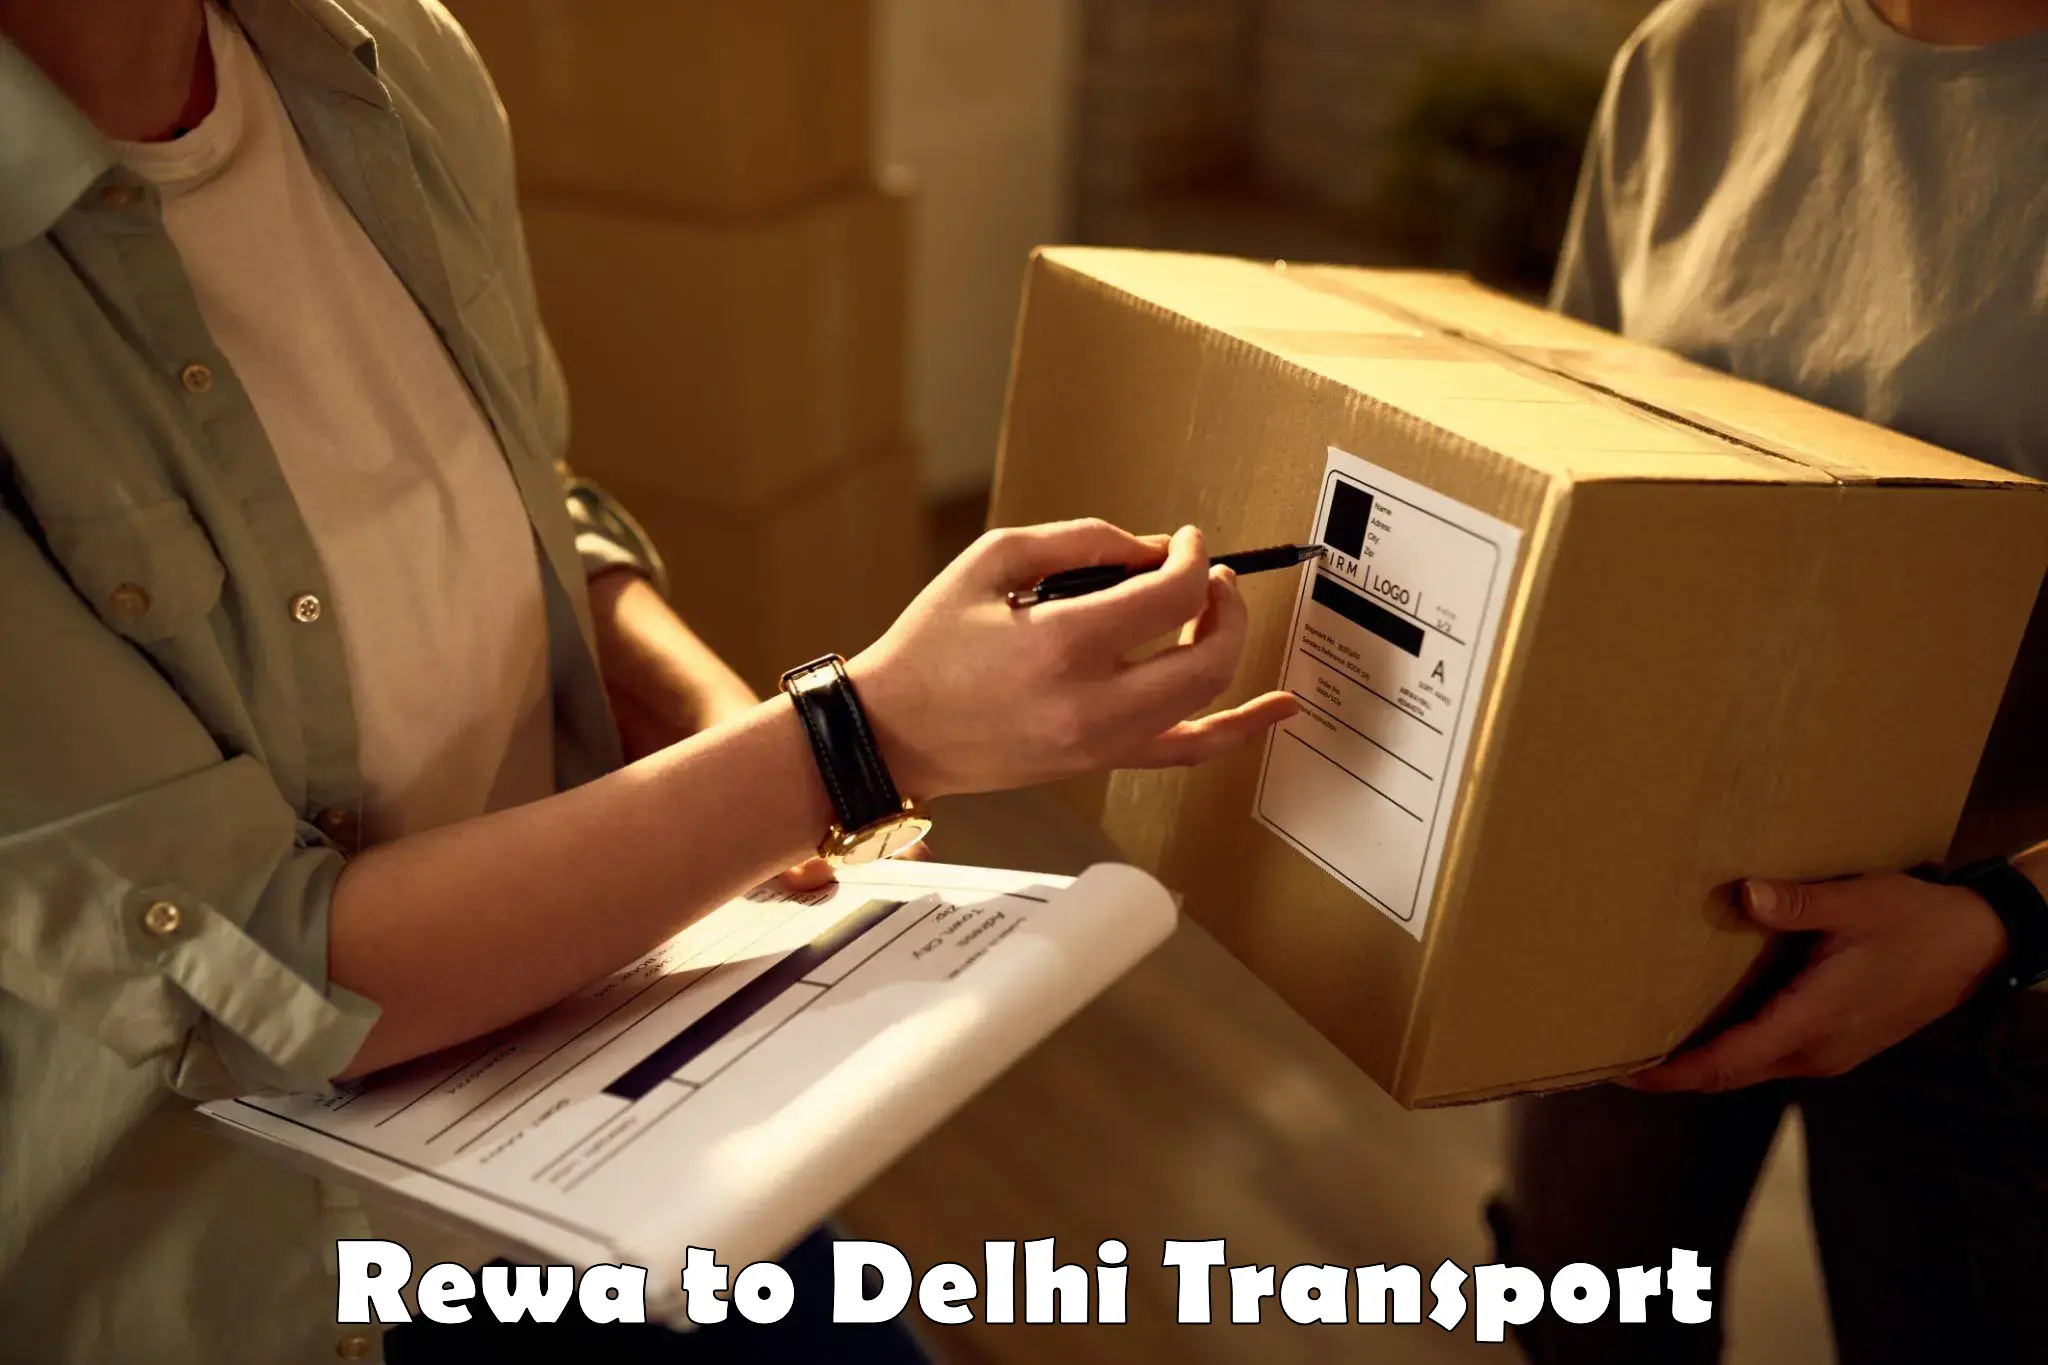 Furniture transport service Rewa to Subhash Nagar